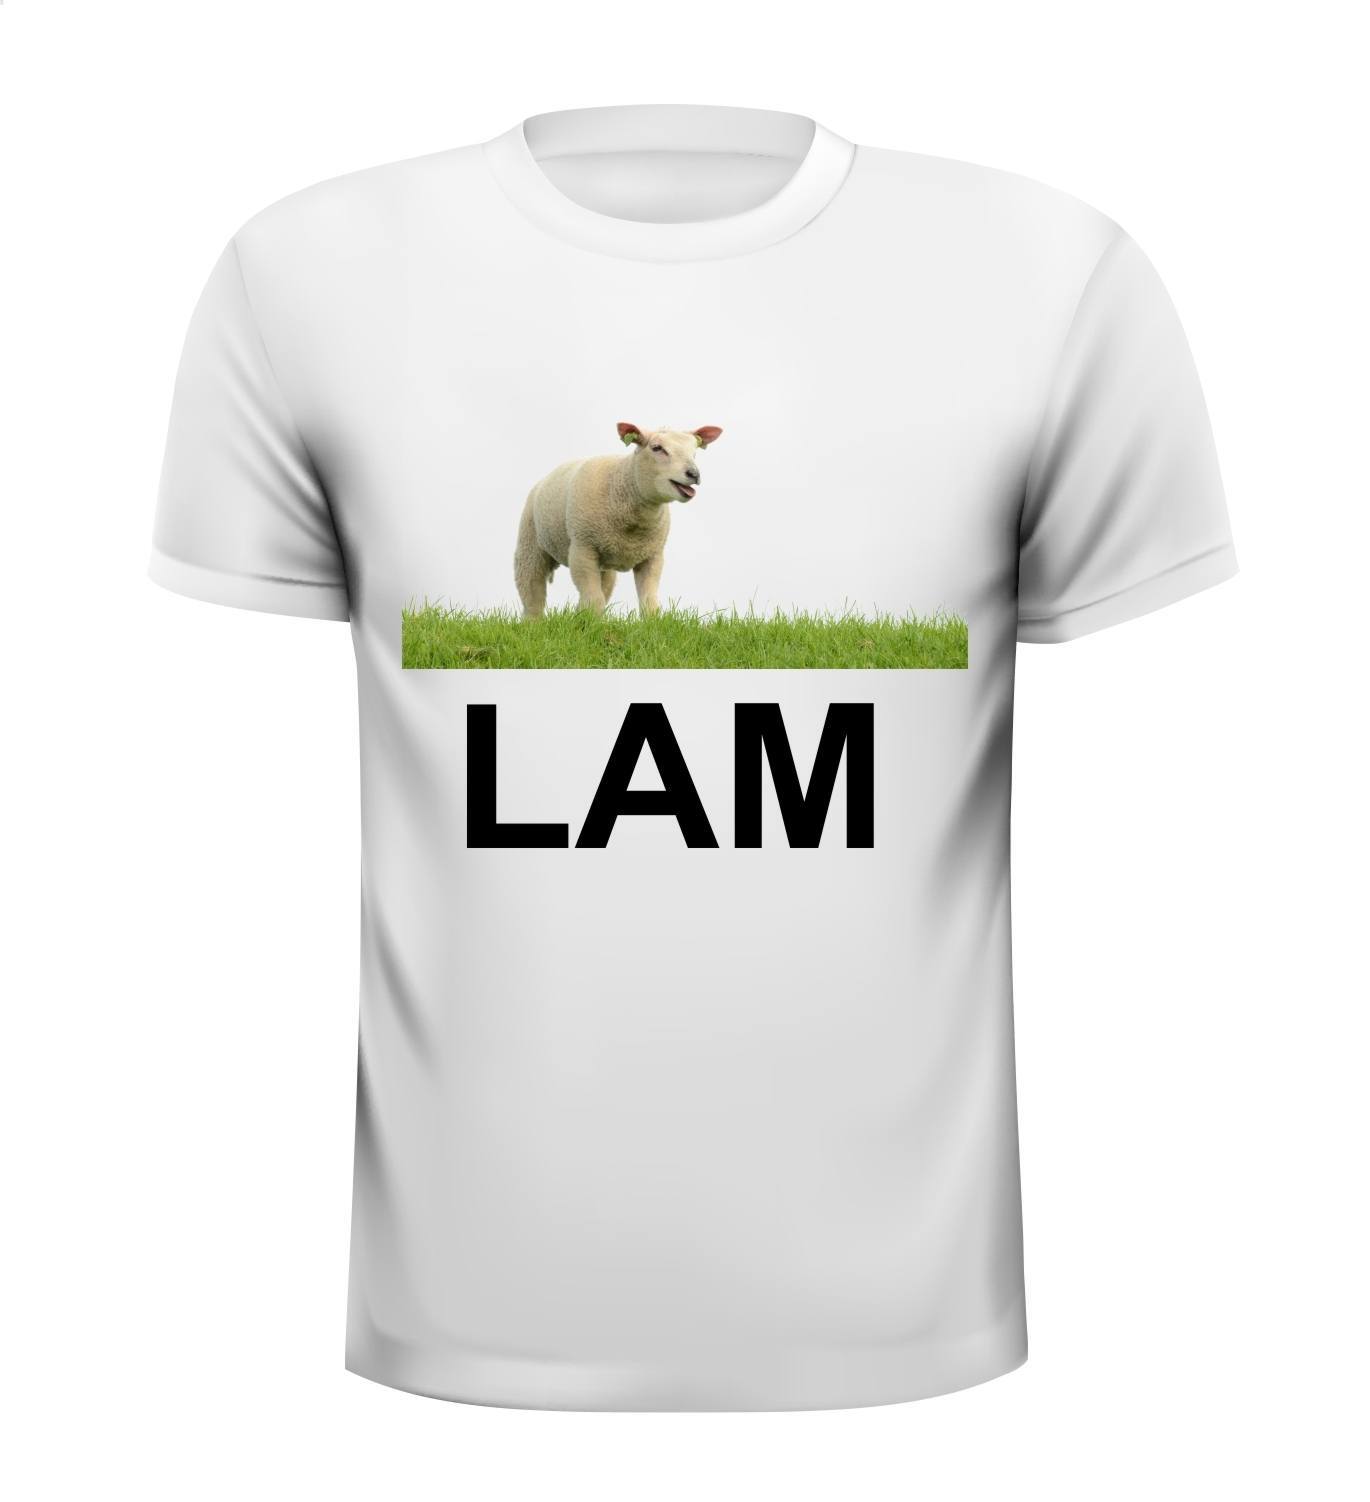 Lam shirt